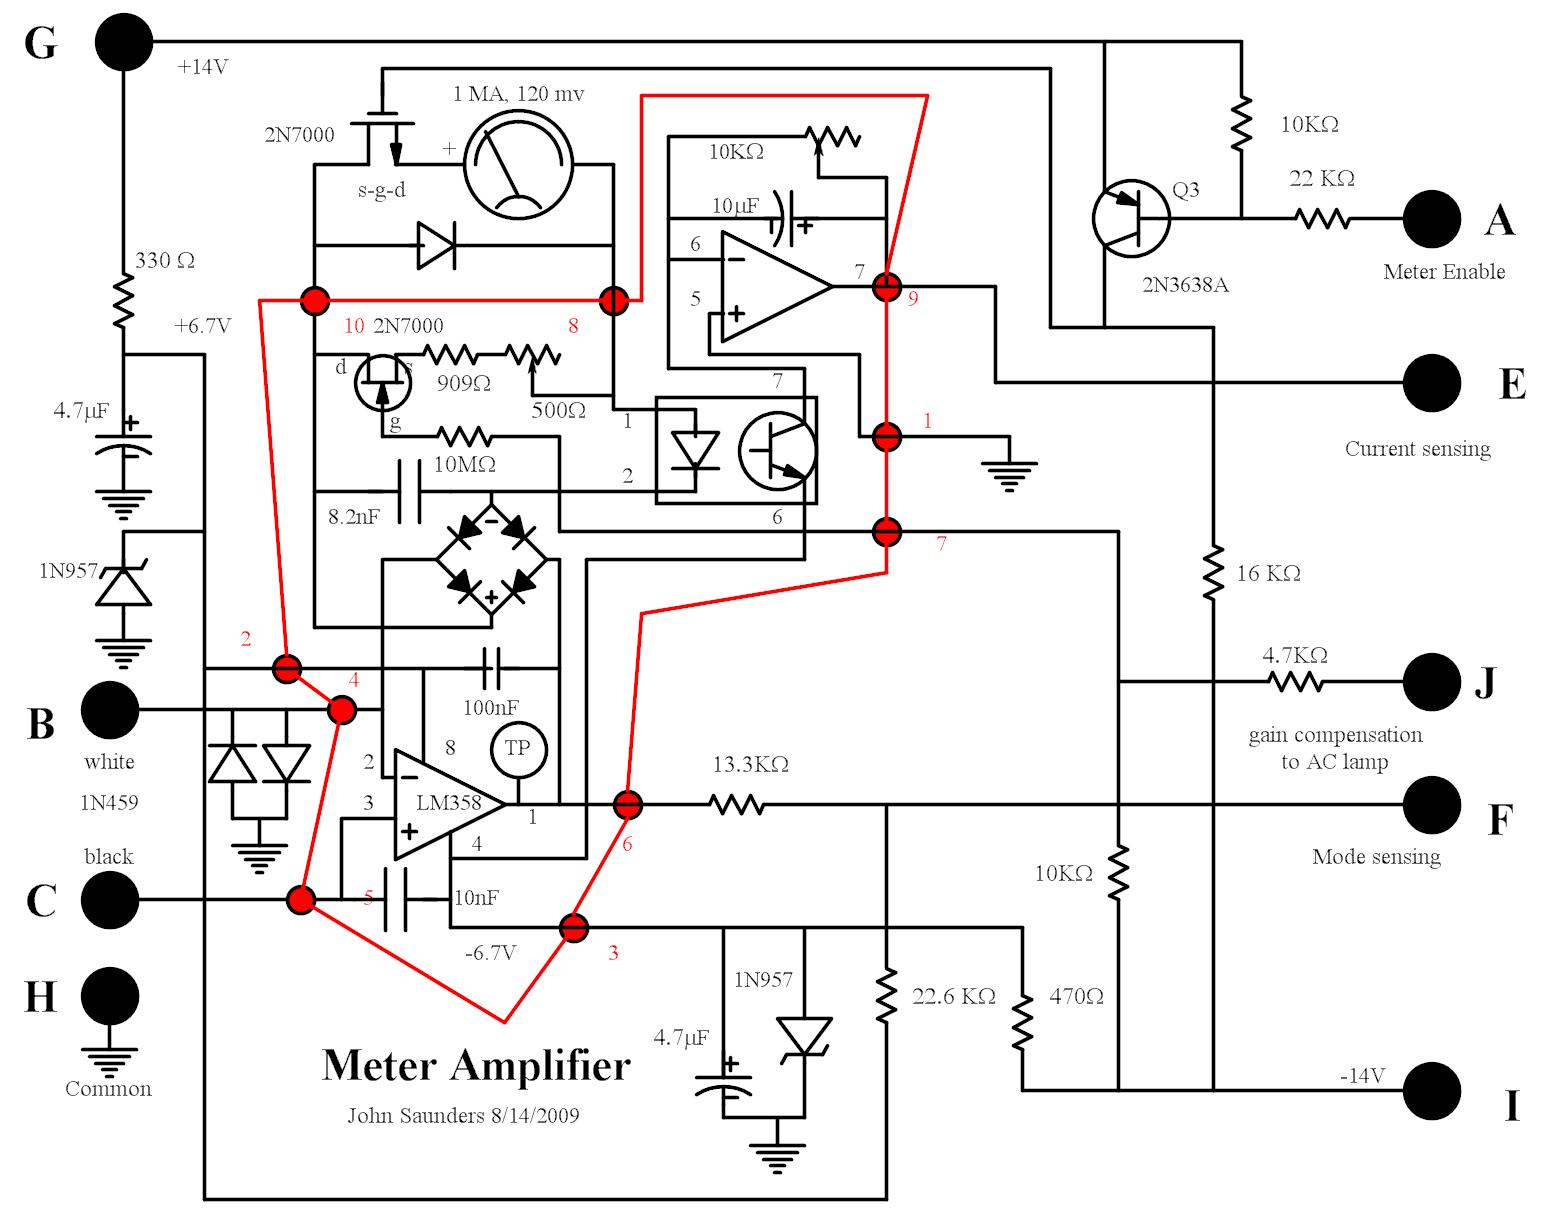 Meter Amplifier Circuit